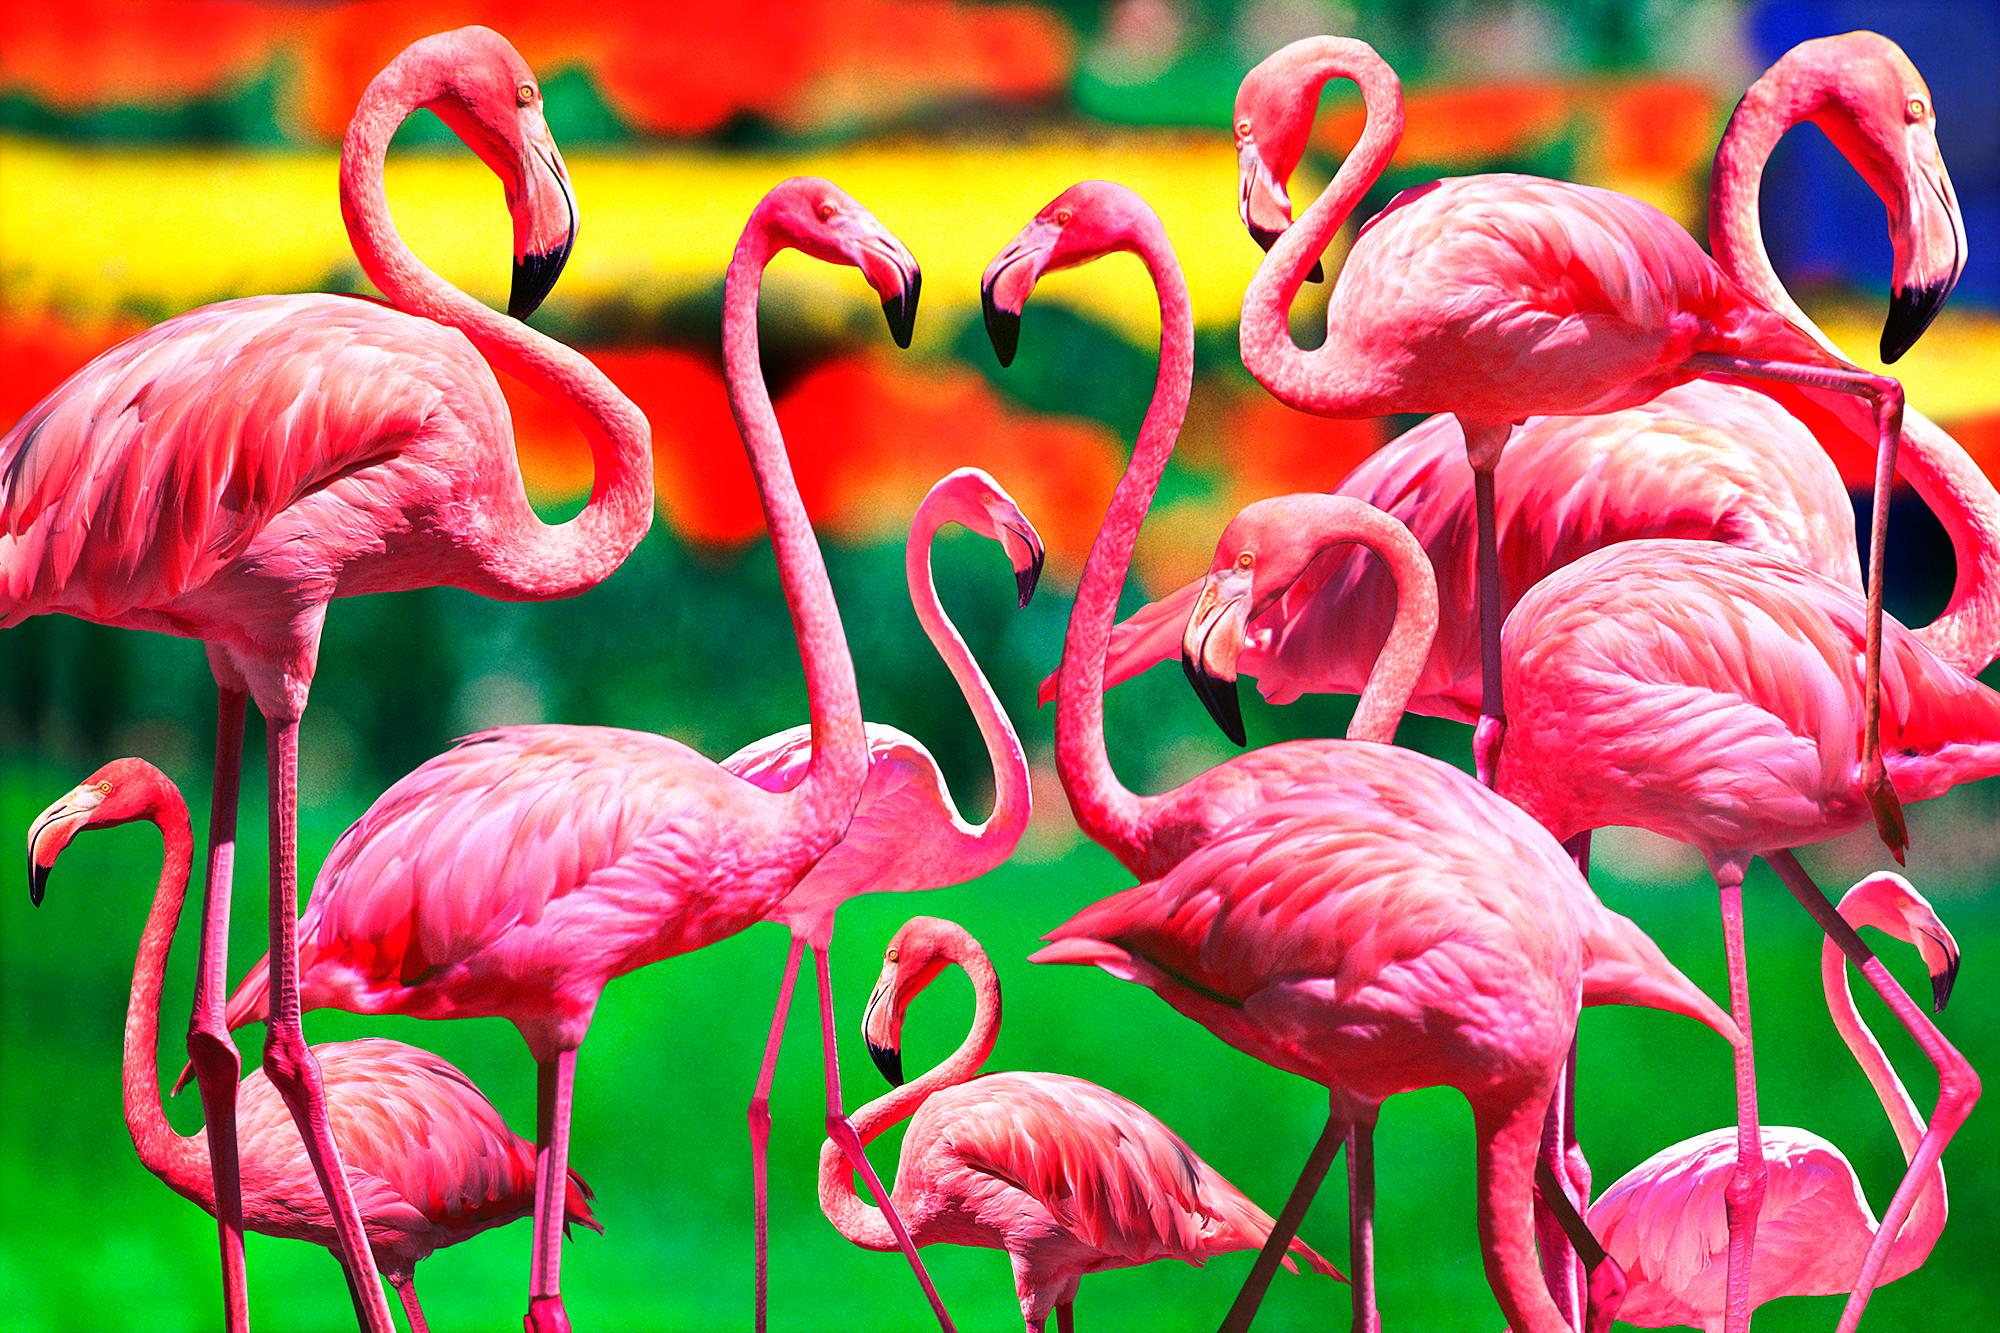 Abstract Photograph Mitchell Funk - Socializing avec des flamants roses sur fond coloré